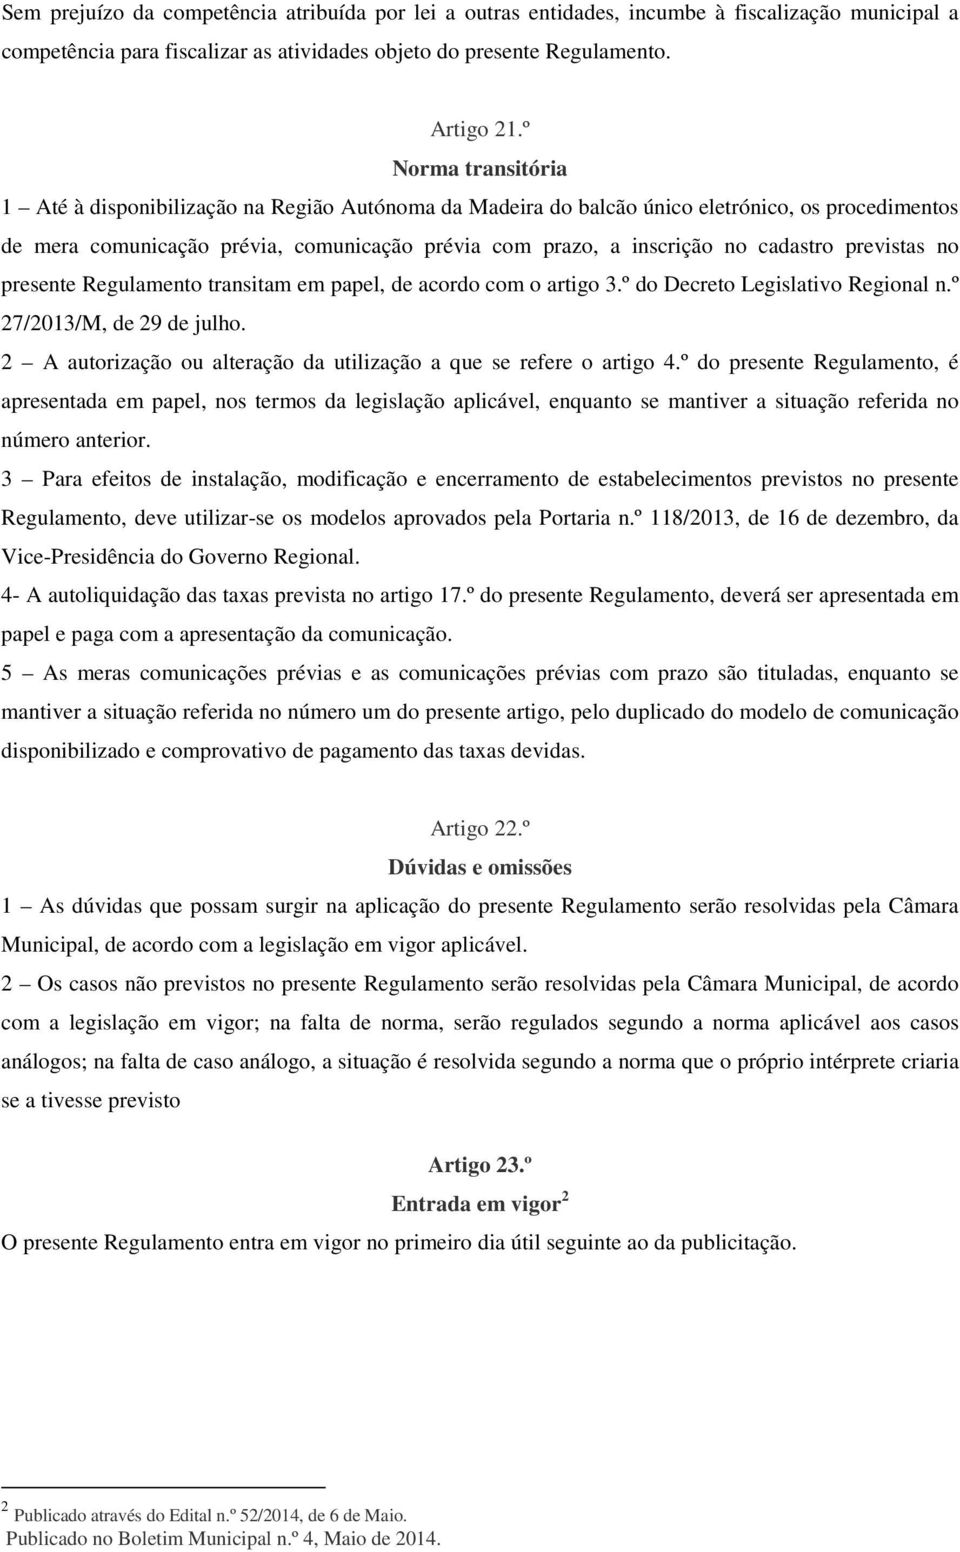 cadastro previstas no presente Regulamento transitam em papel, de acordo com o artigo 3.º do Decreto Legislativo Regional n.º 27/2013/M, de 29 de julho.